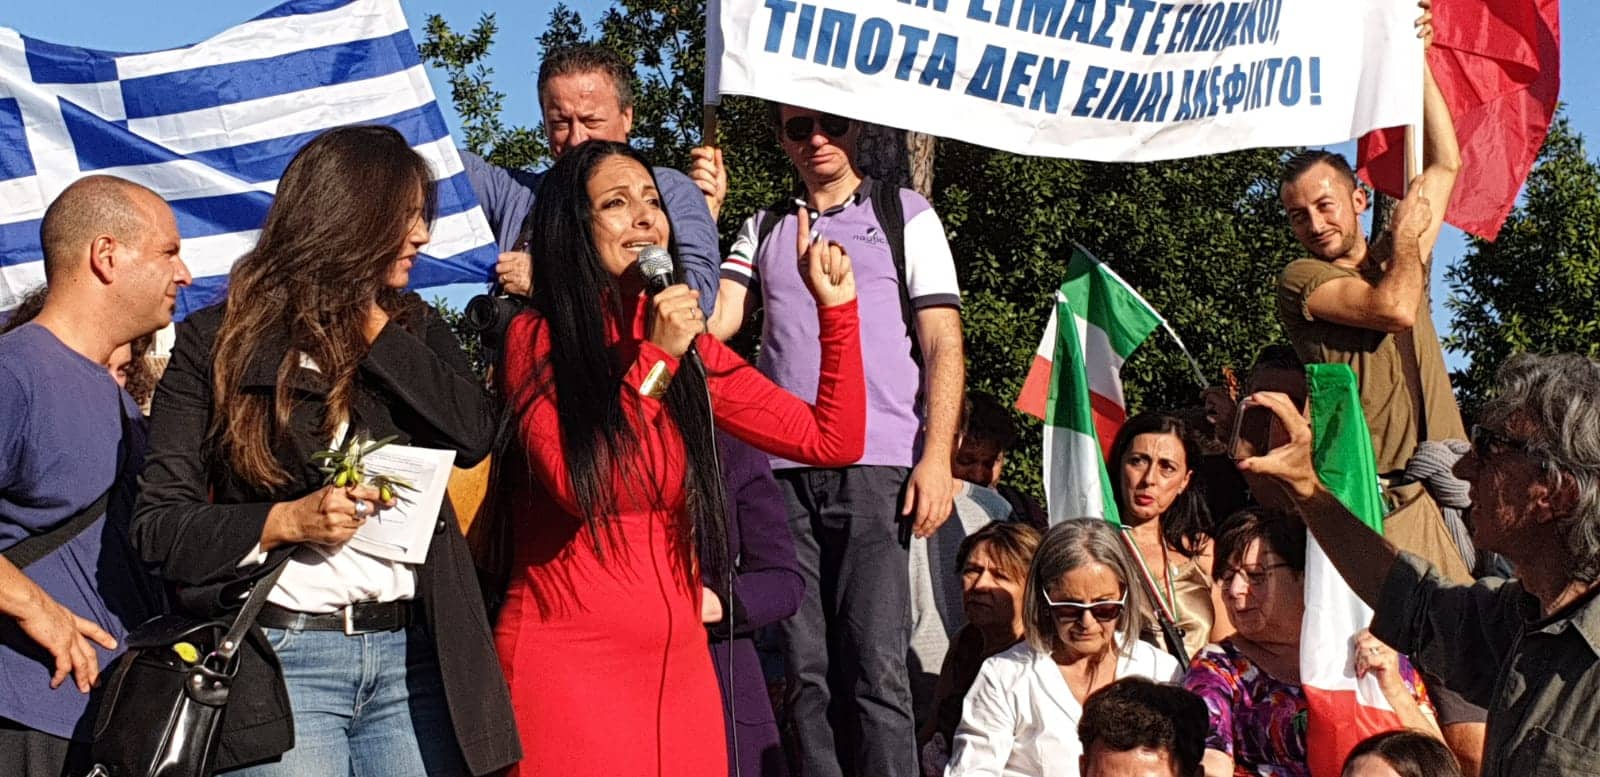 Χιλιάδες Ιταλοί ζήτησαν έξοδο από την Ευρωπαϊκή Ένωση! – Παρούσα στην διαδήλωση και η Ελληνίδα Γ.Μπιτάκου